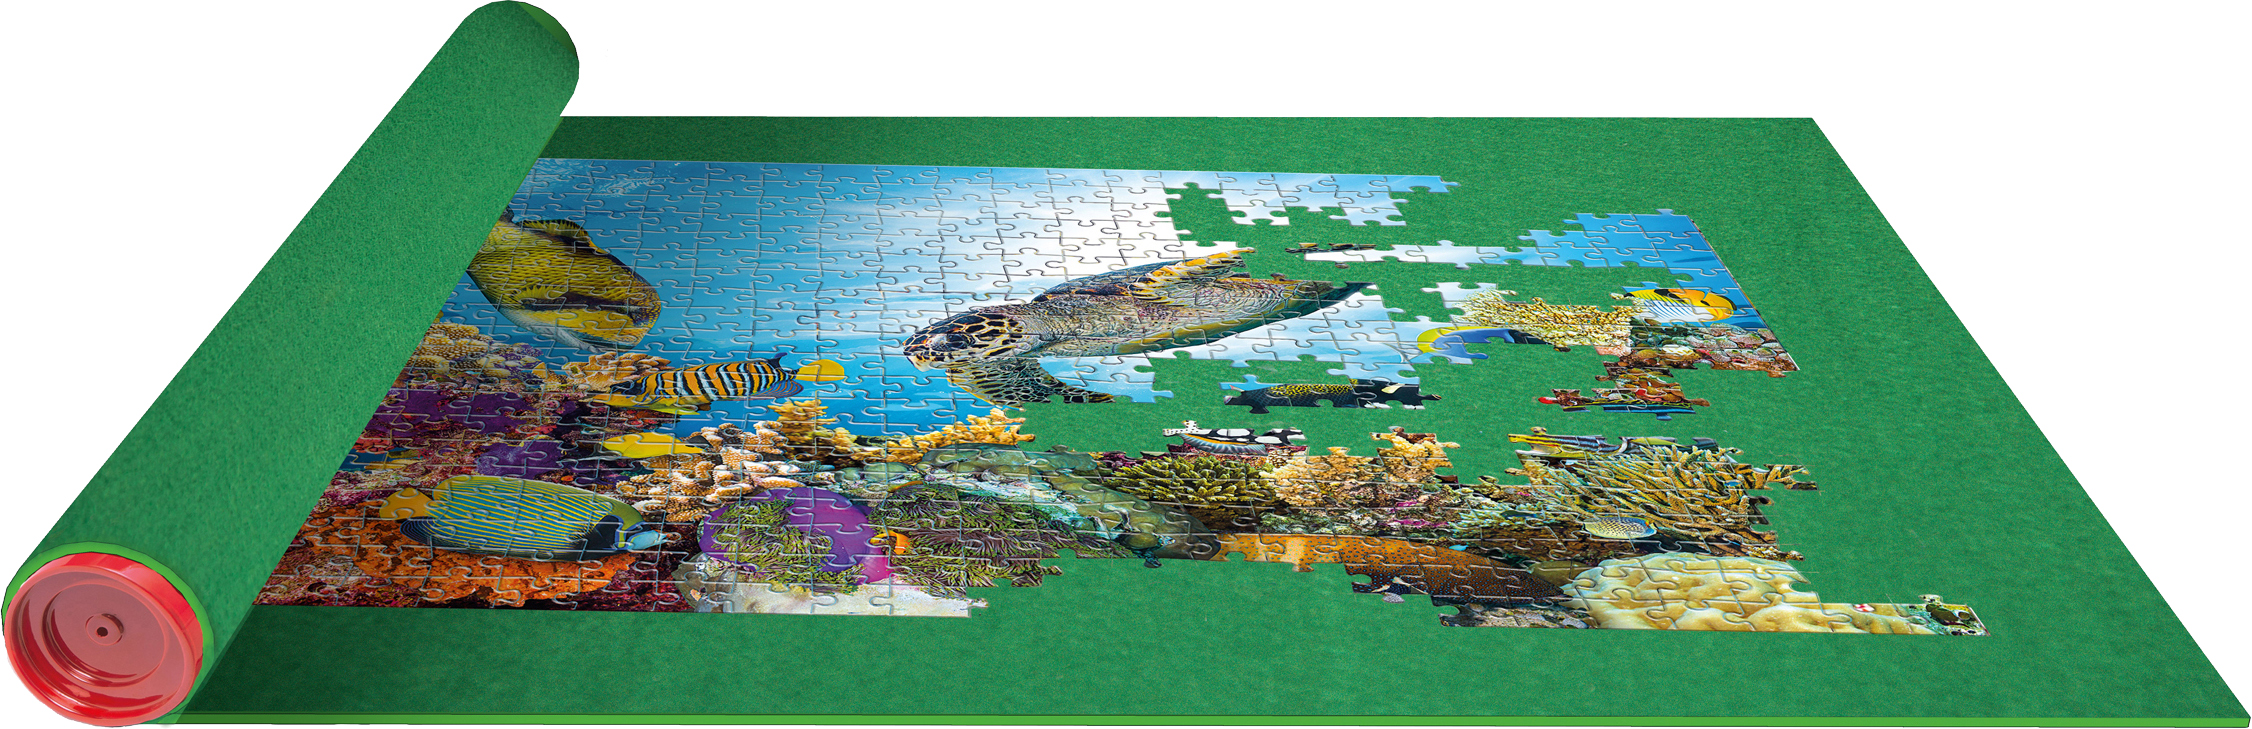 CLEMENTONI Puzzle Matte universal 2000 Teile Mehrfarbig Puzzlematte, bis